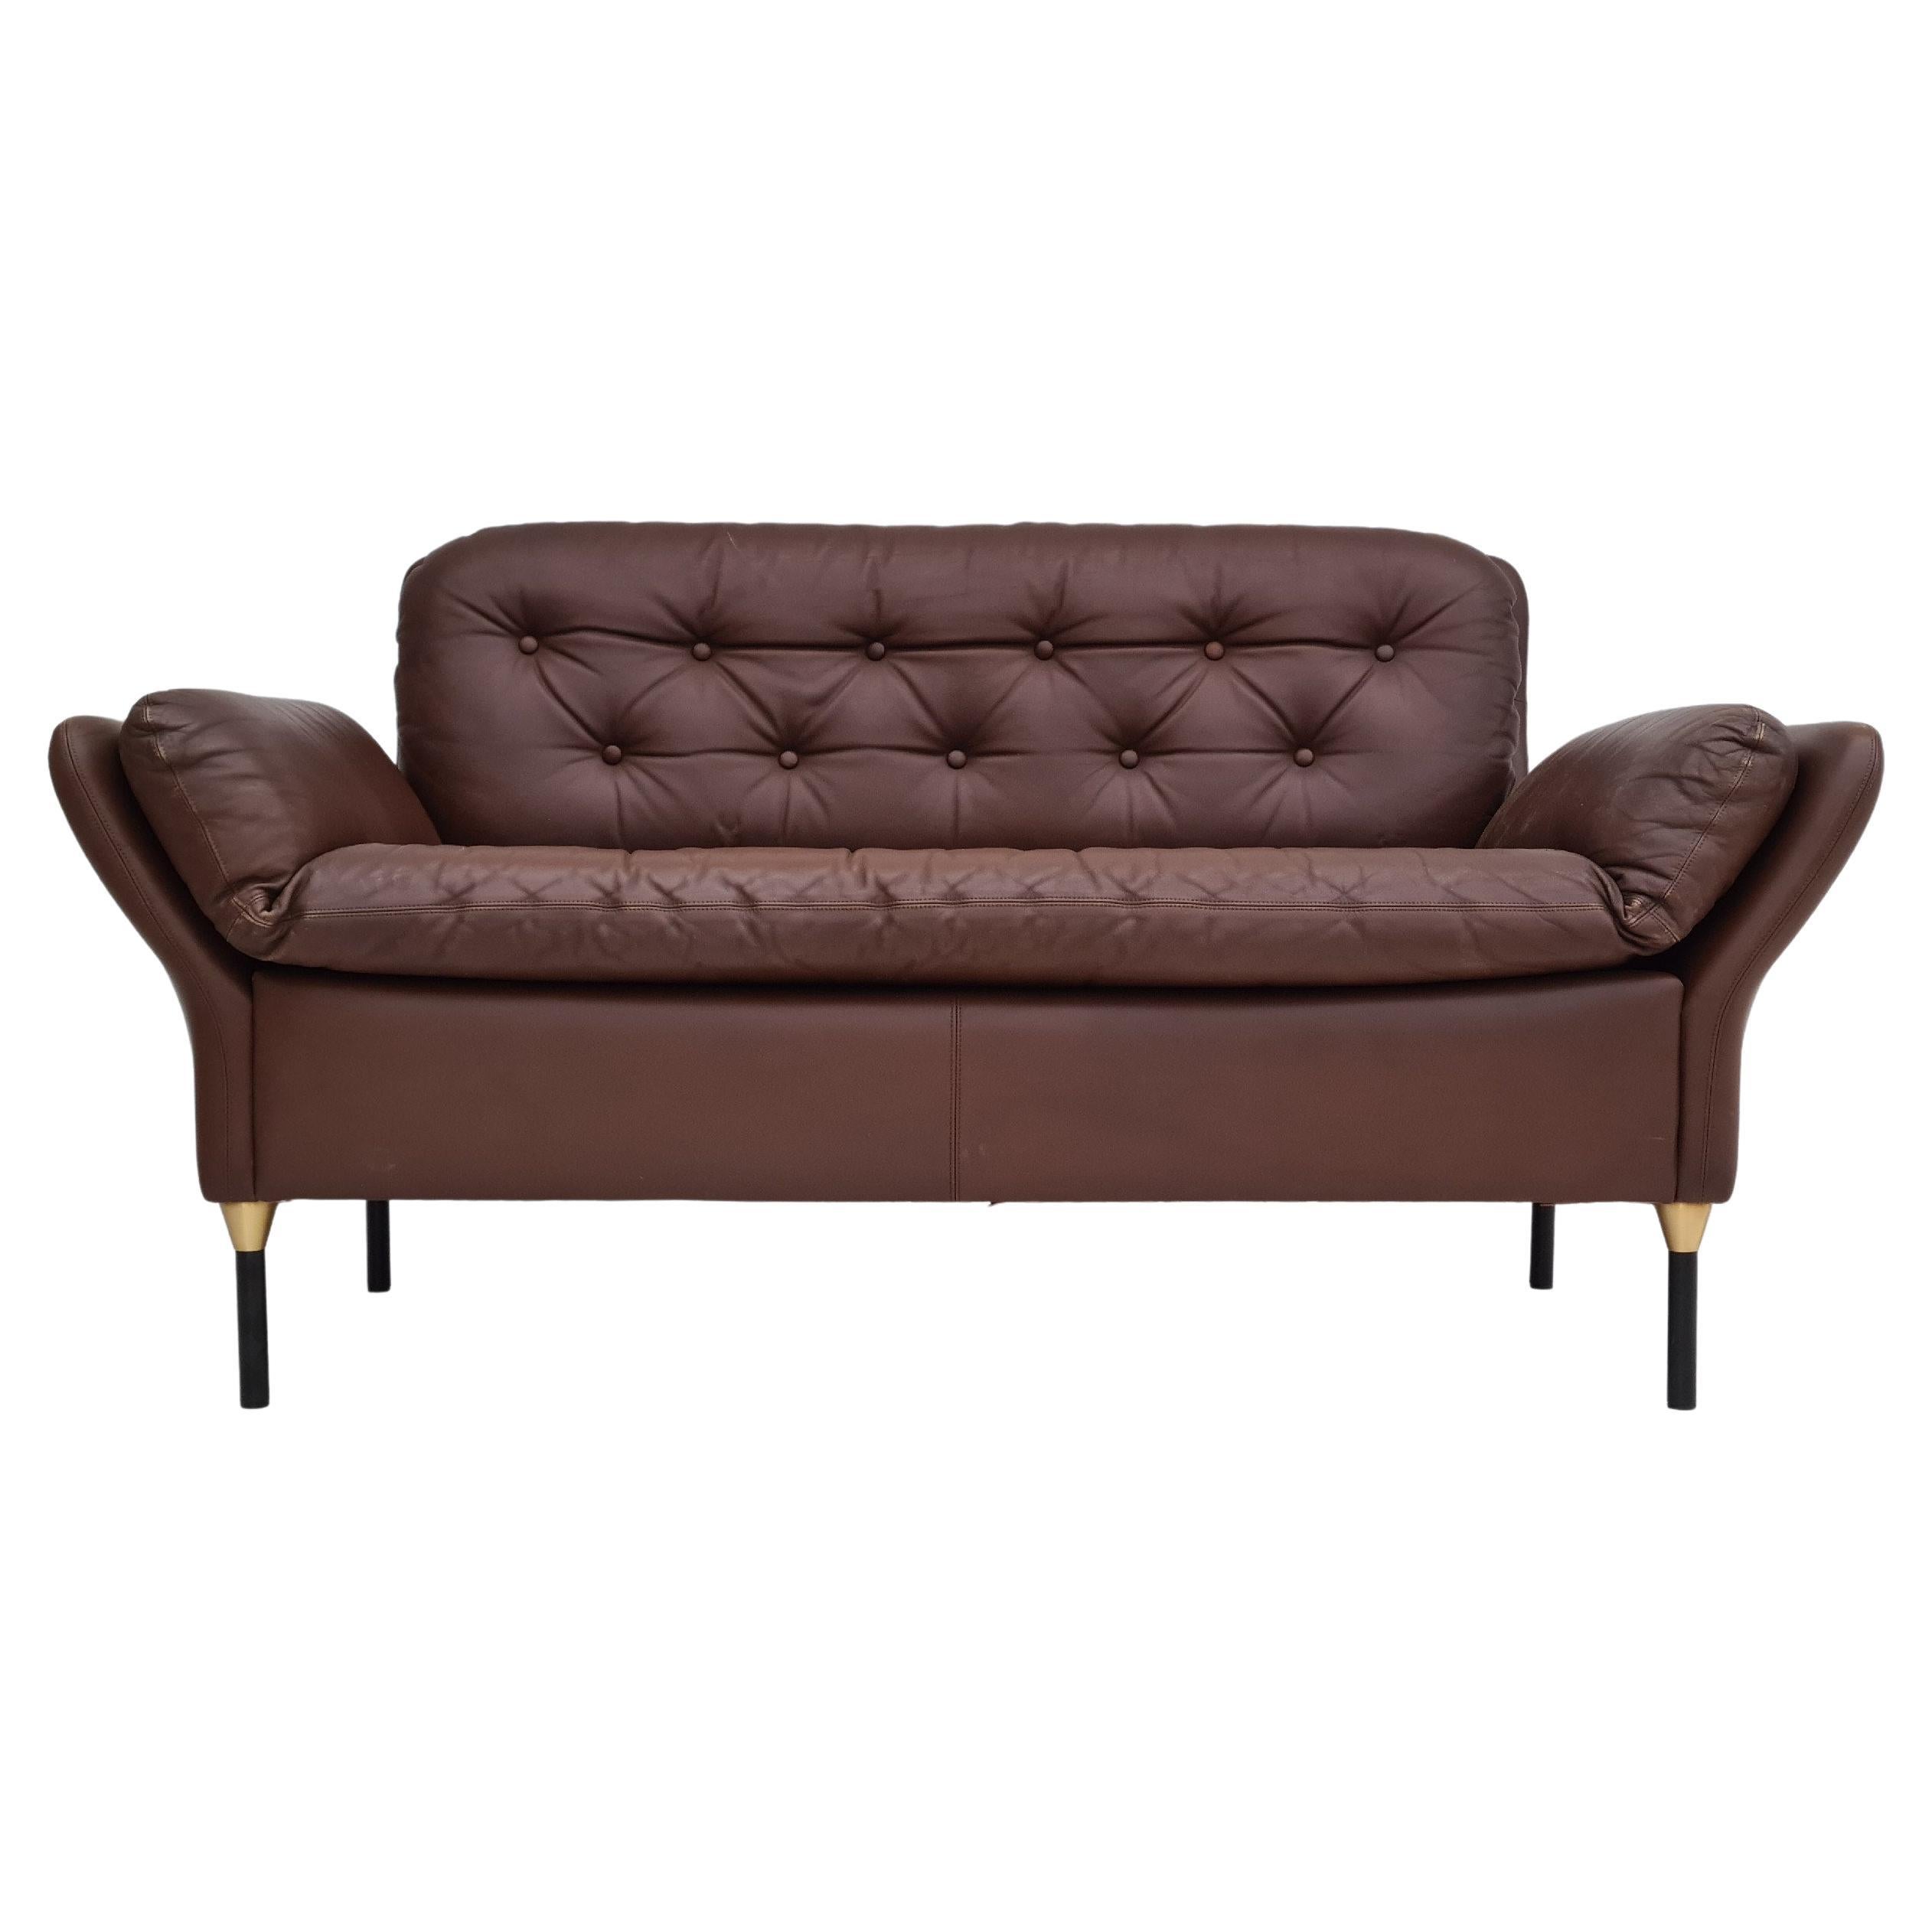 70s, Danish 2-Seater Sofa, Original Brown Leather